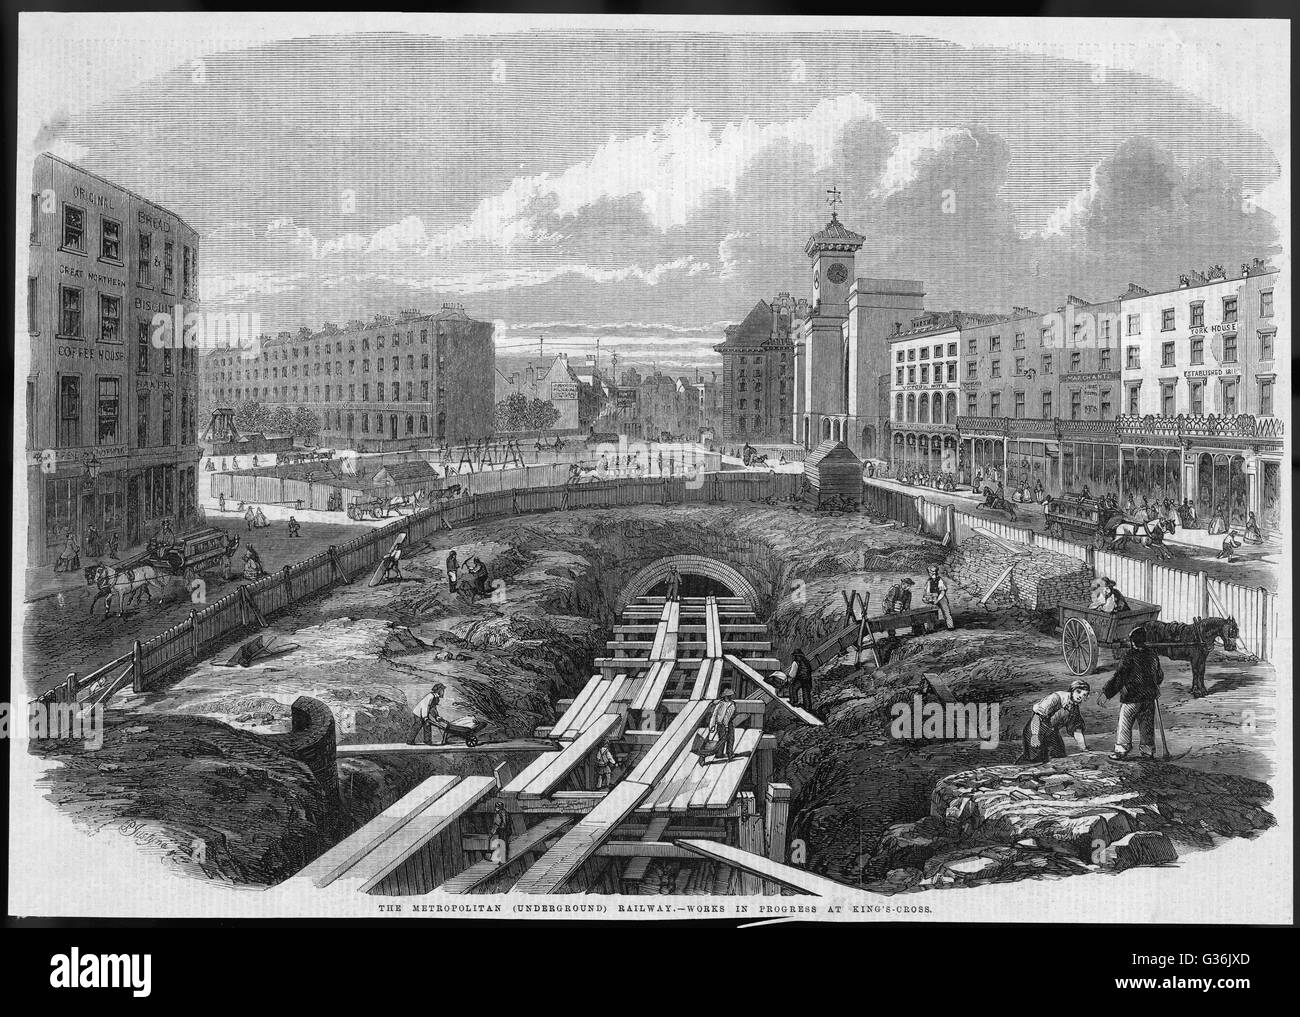 Lavori di costruzione in corso sul mondo prima ferrovia metropolitana vicino a King's Cross, nel centro di Londra. Data: 1861 Foto Stock